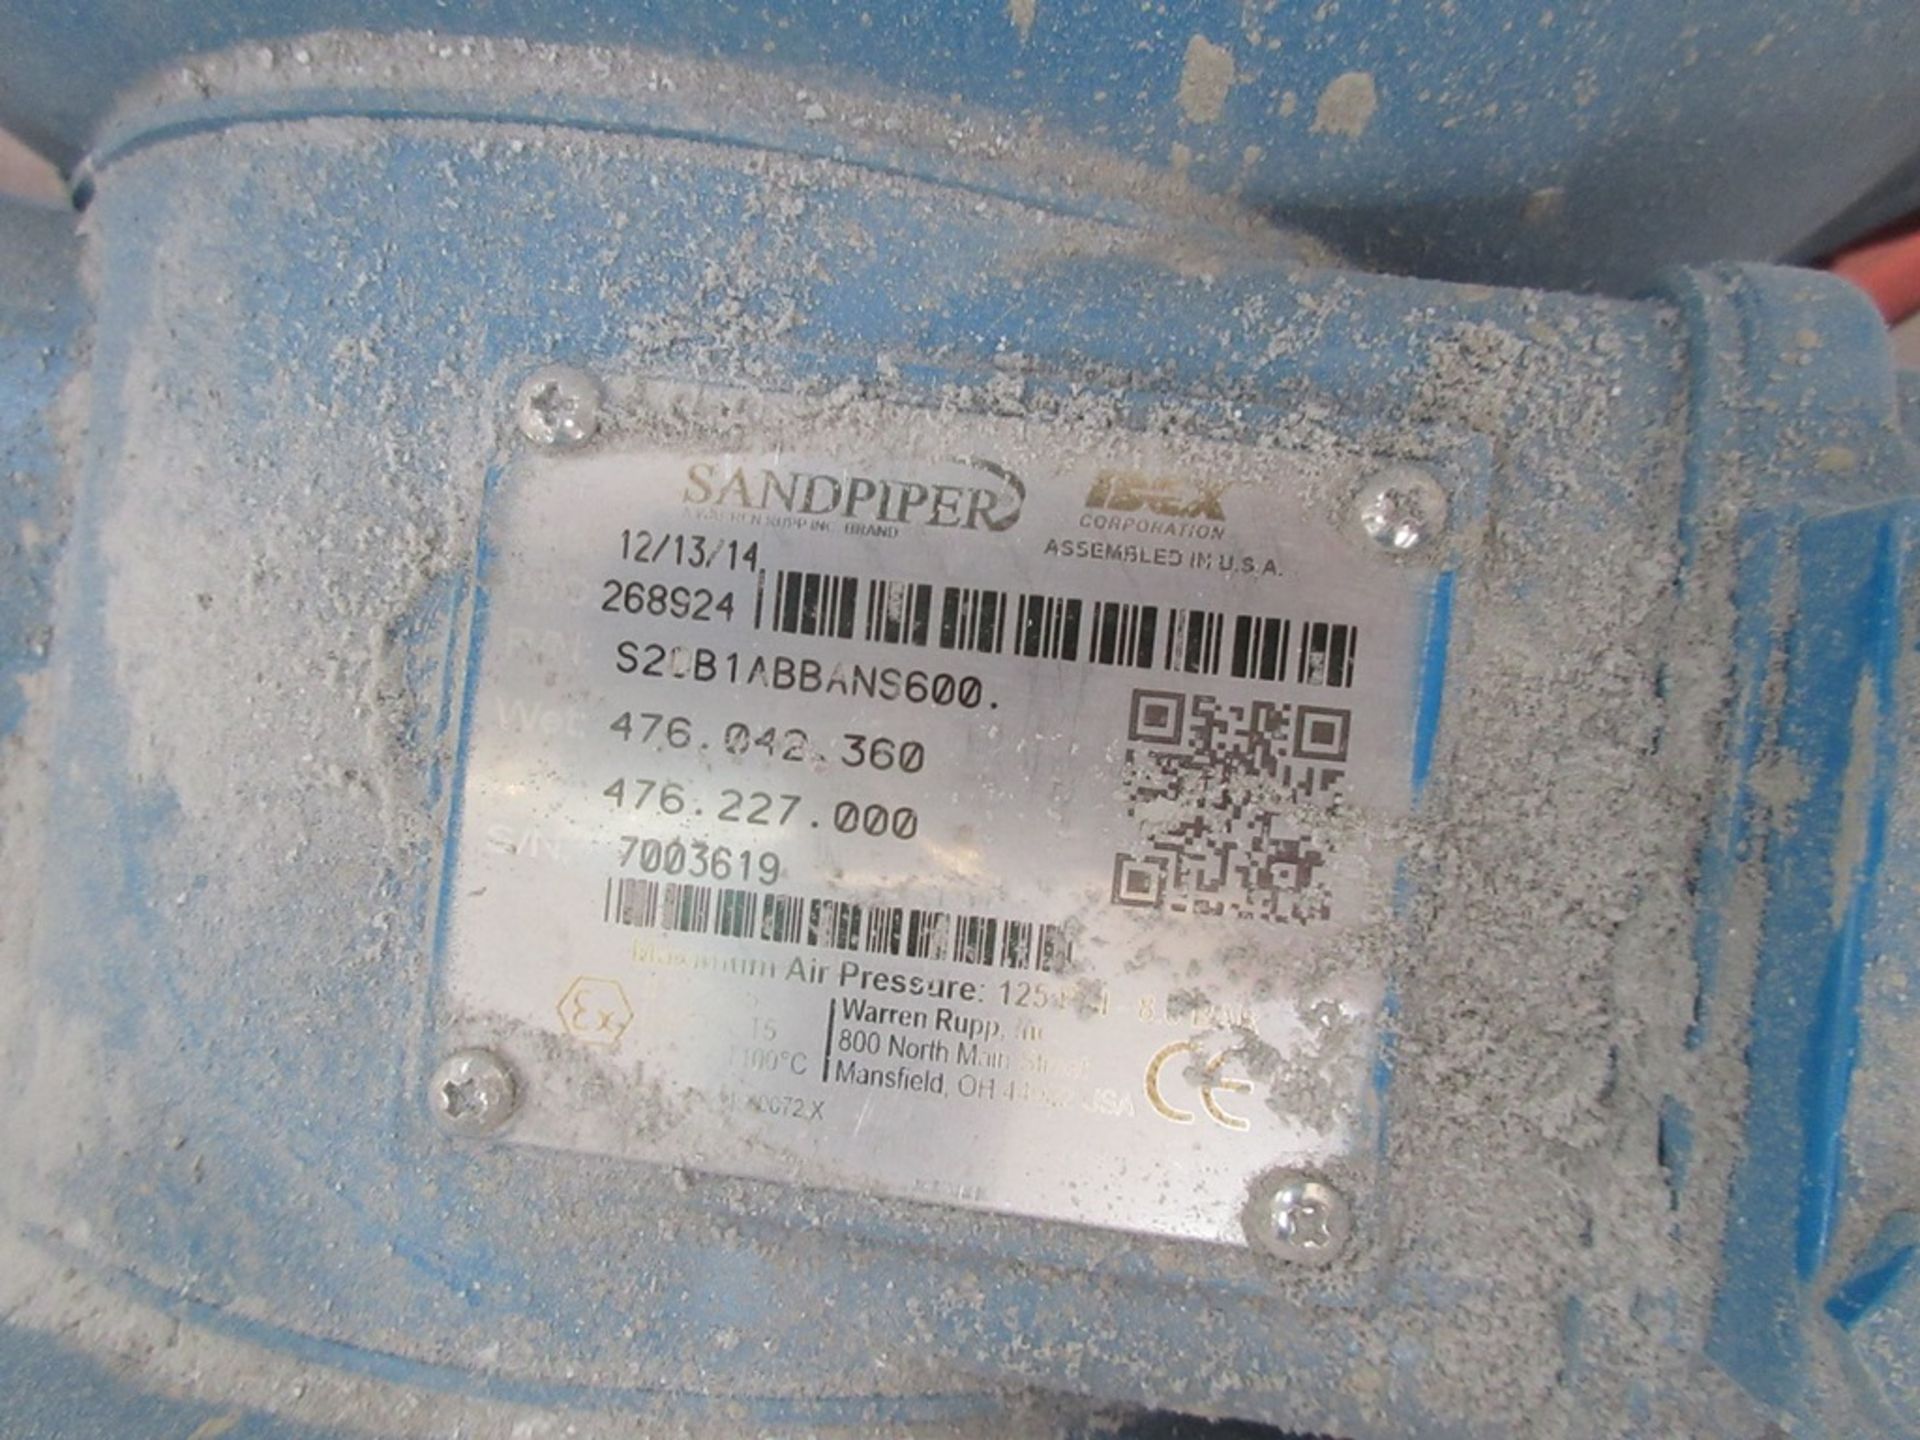 Sandpiper S20B1ABBAN5600 diaphragm pump, serial no. 7003619 (2014) - Image 2 of 3